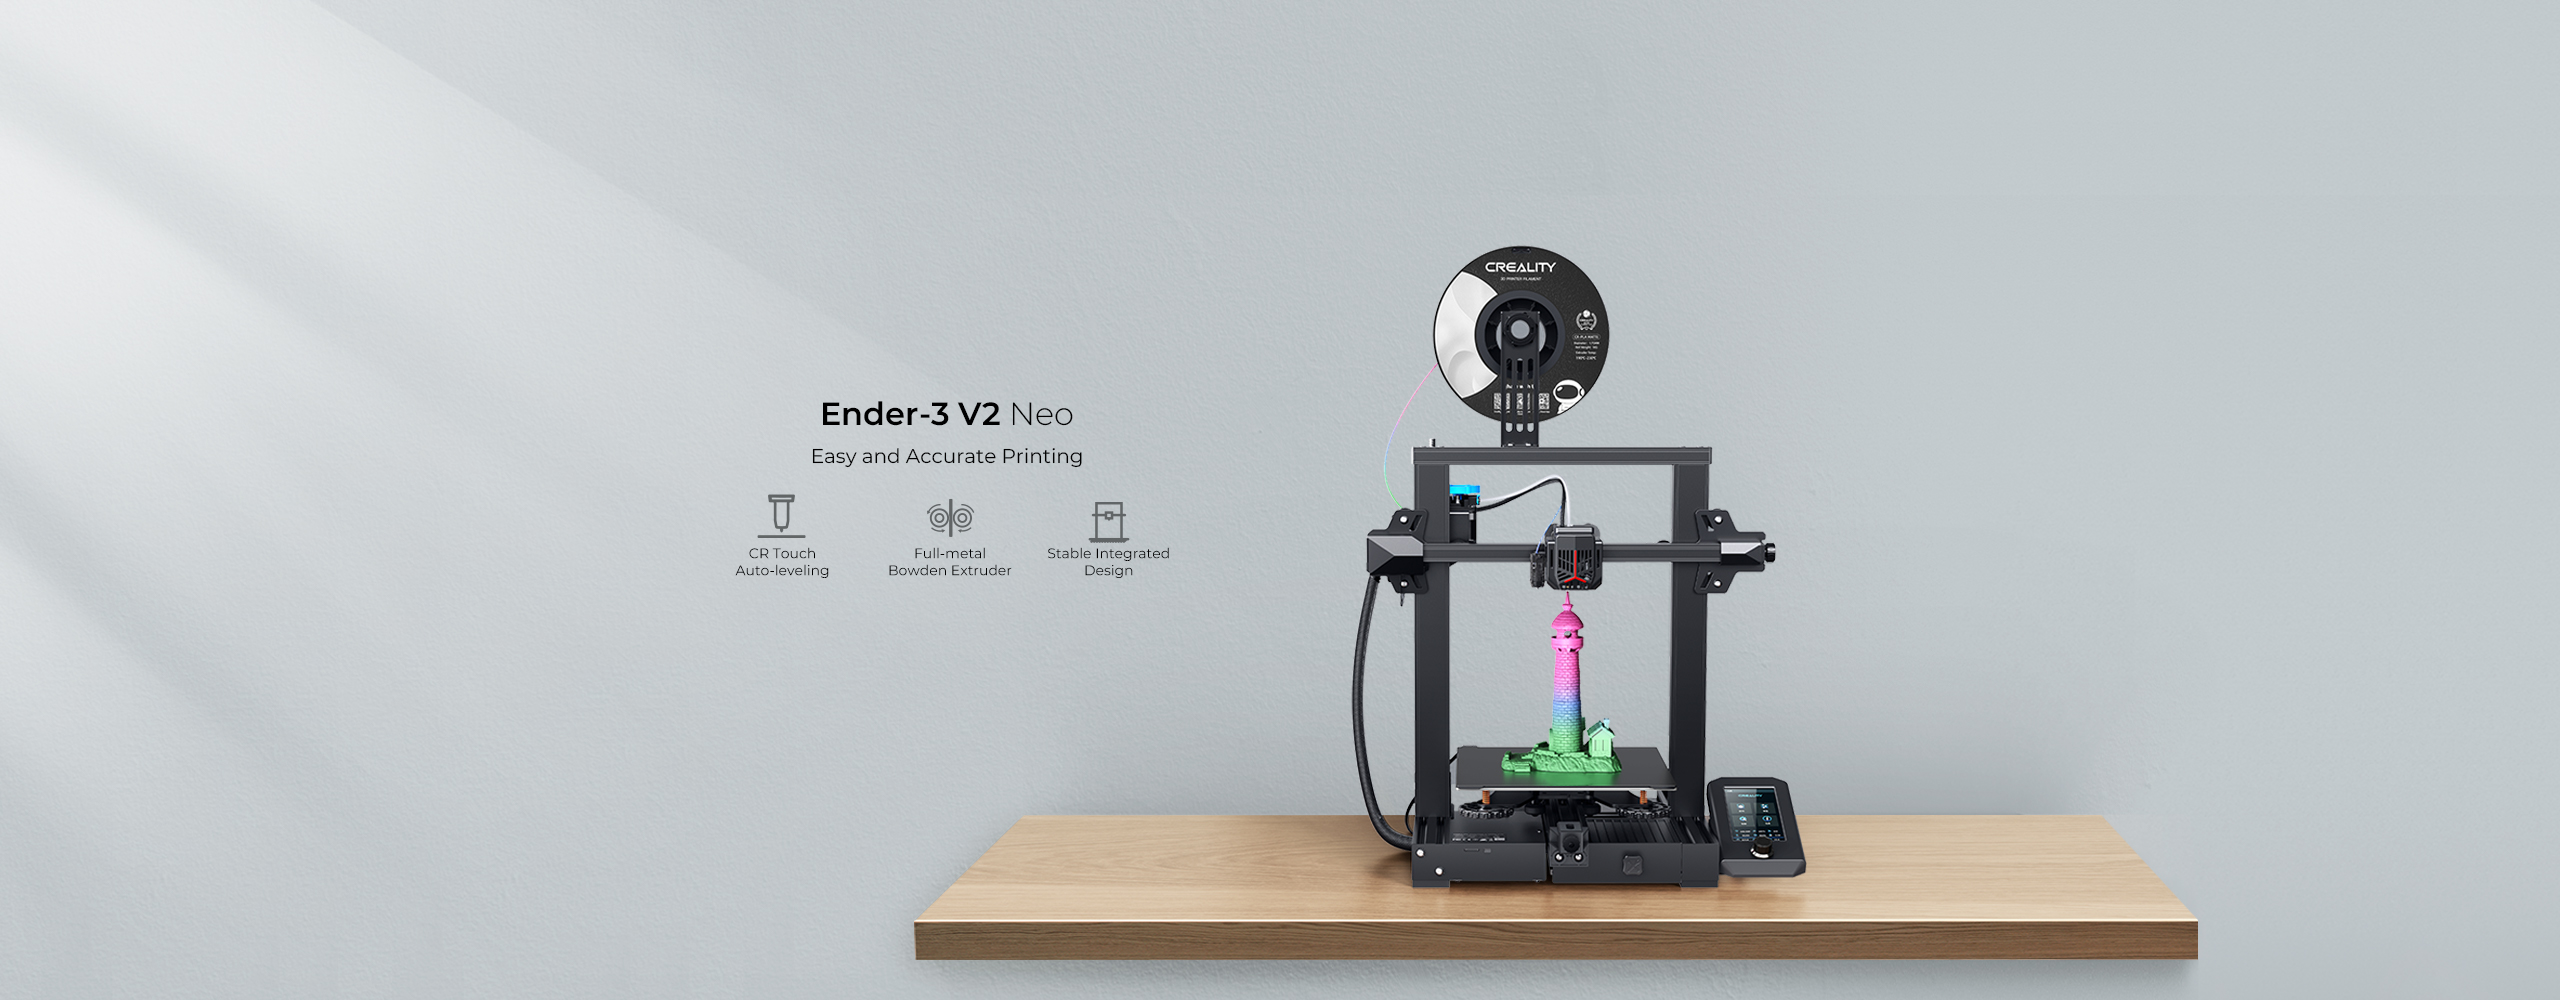 Ender-3 V2 Neo 3D Printer - Creality 3D